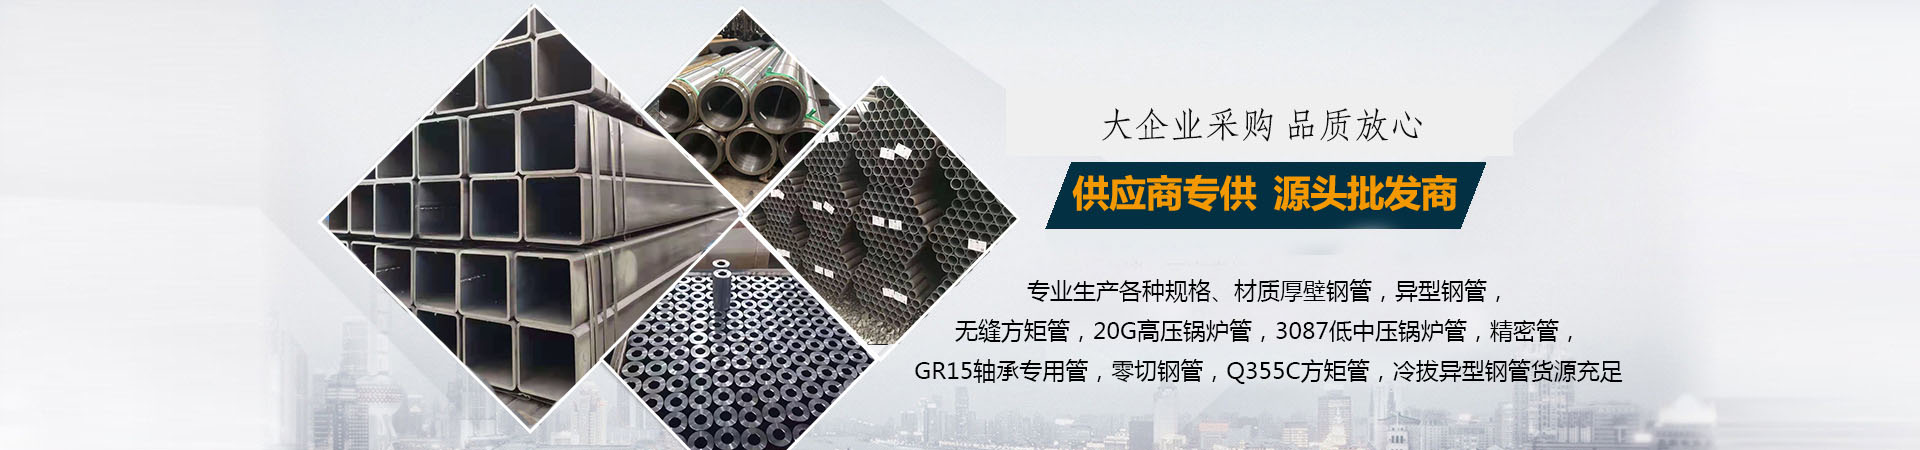 GR15轴承专用管、徐州本地GR15轴承专用管、徐州、徐州GR15轴承专用管